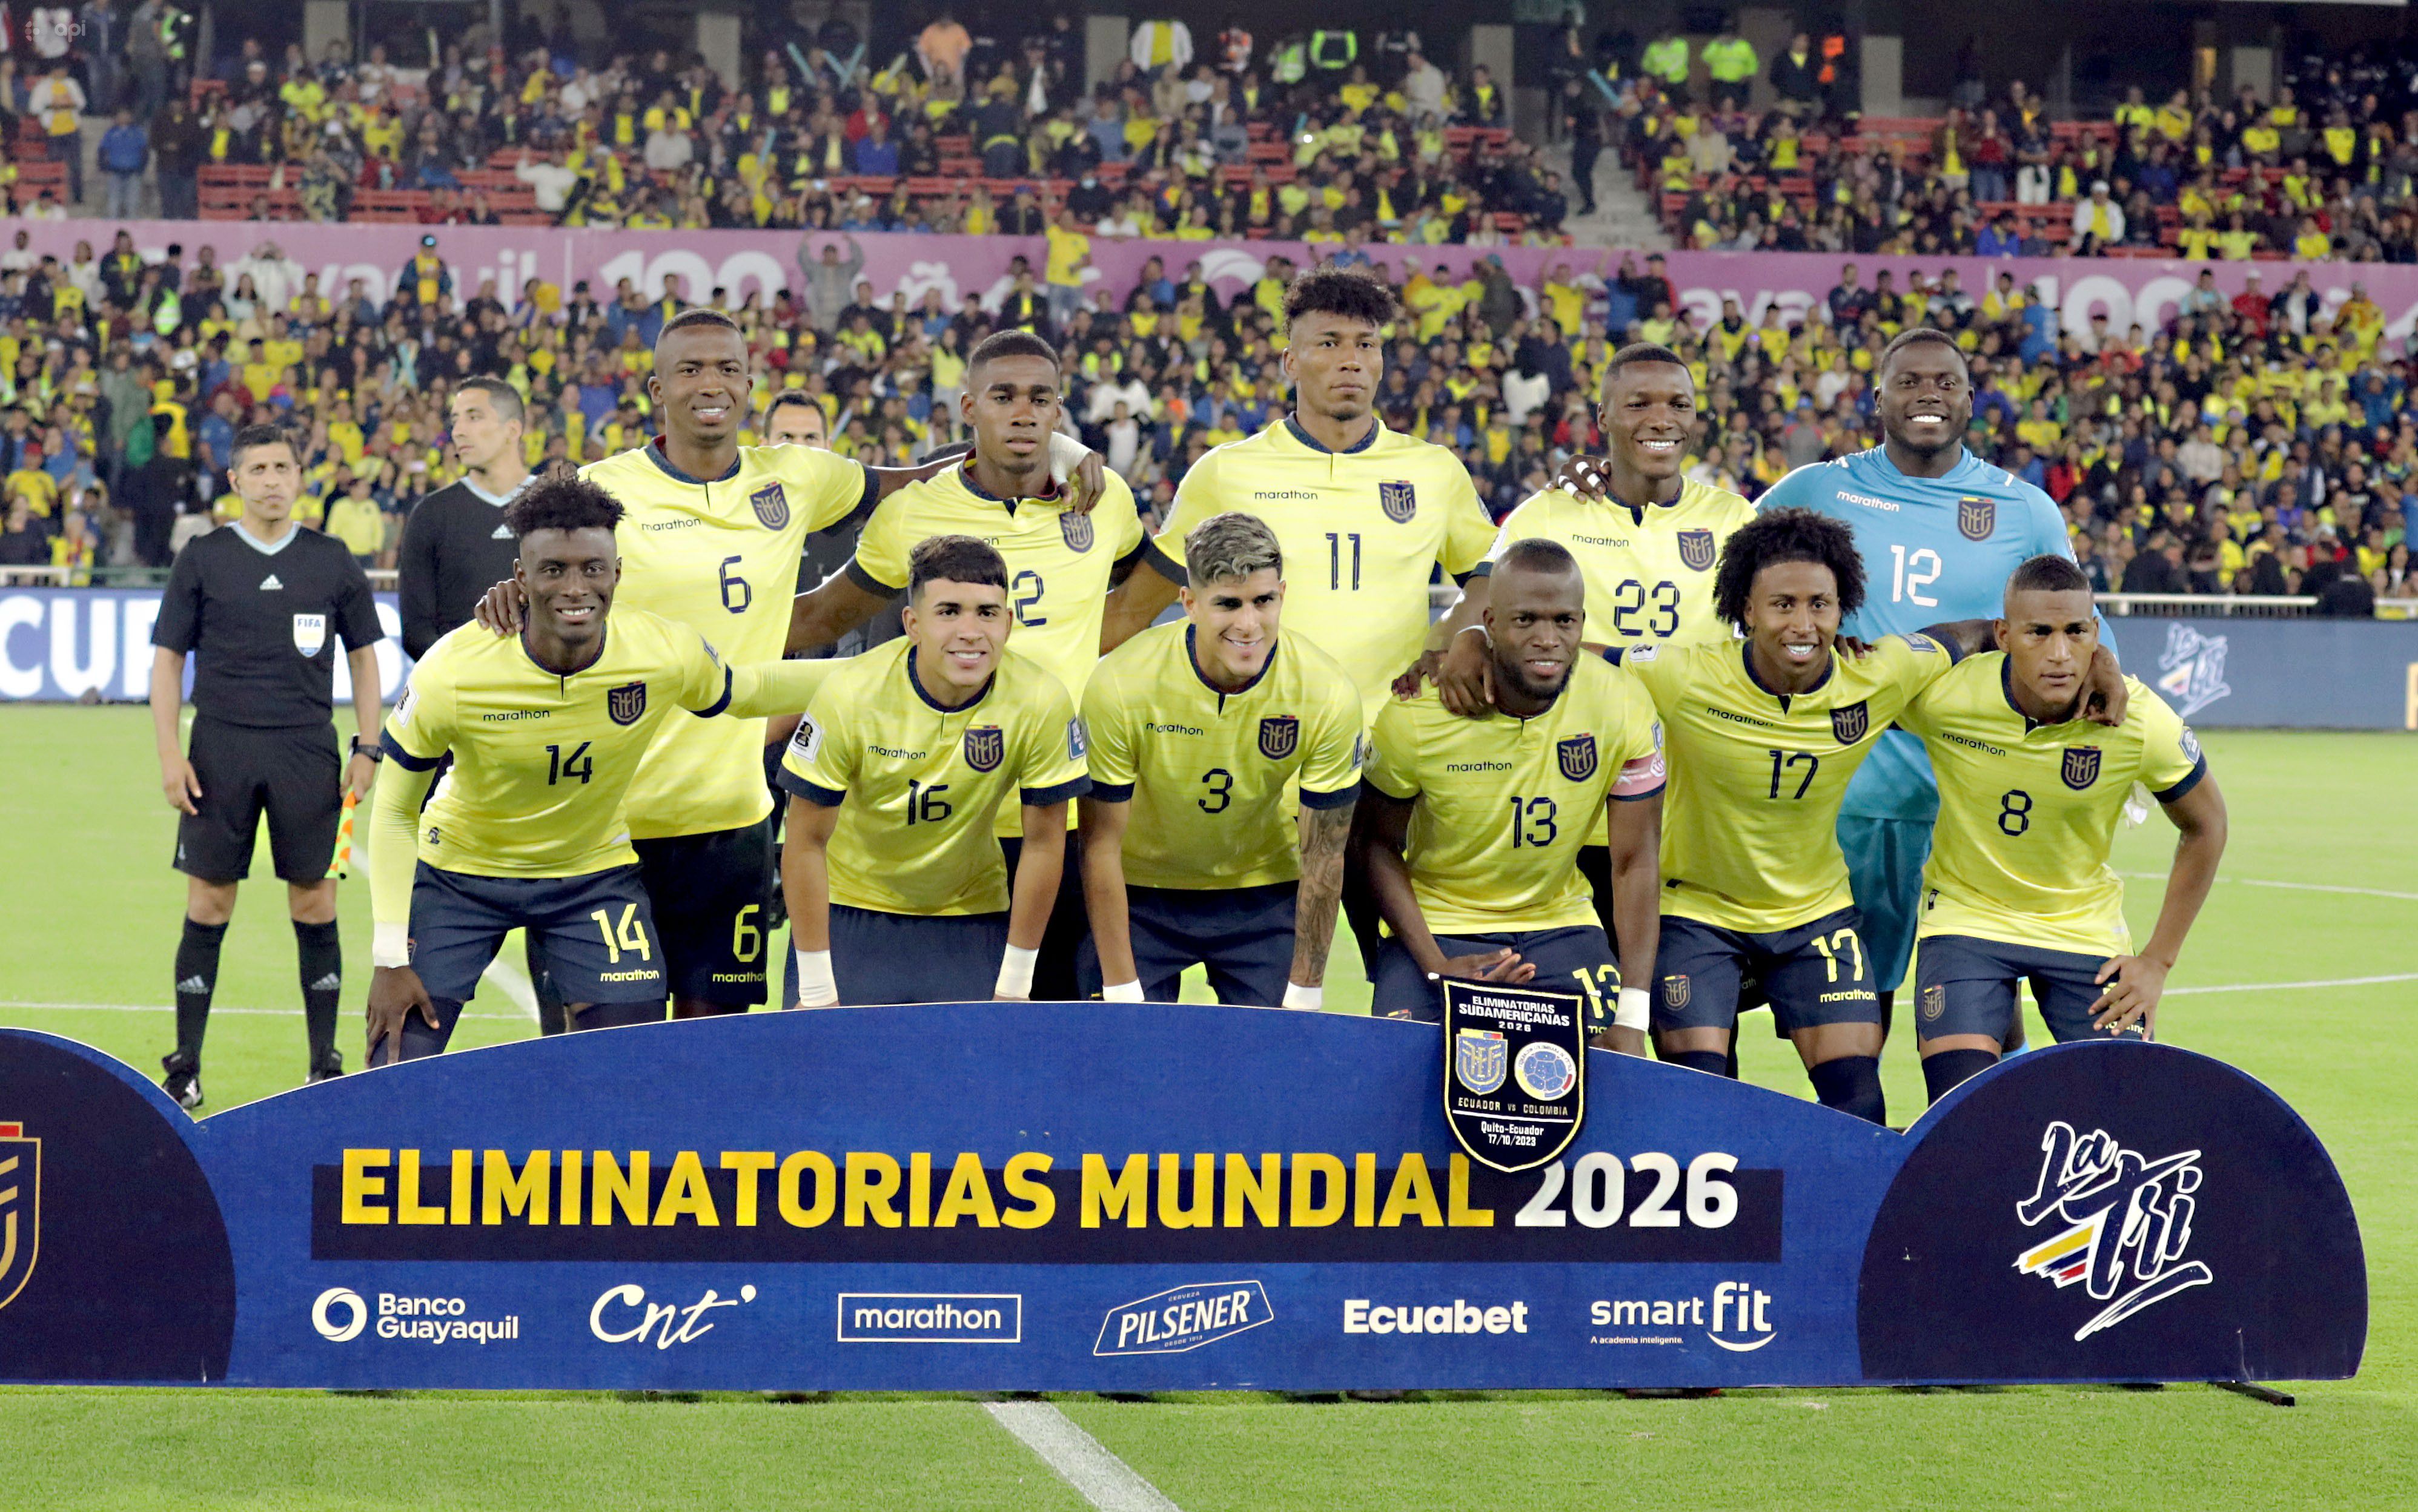 La selección de Ecuador es una de las selecciones sancionadas por la FIFA